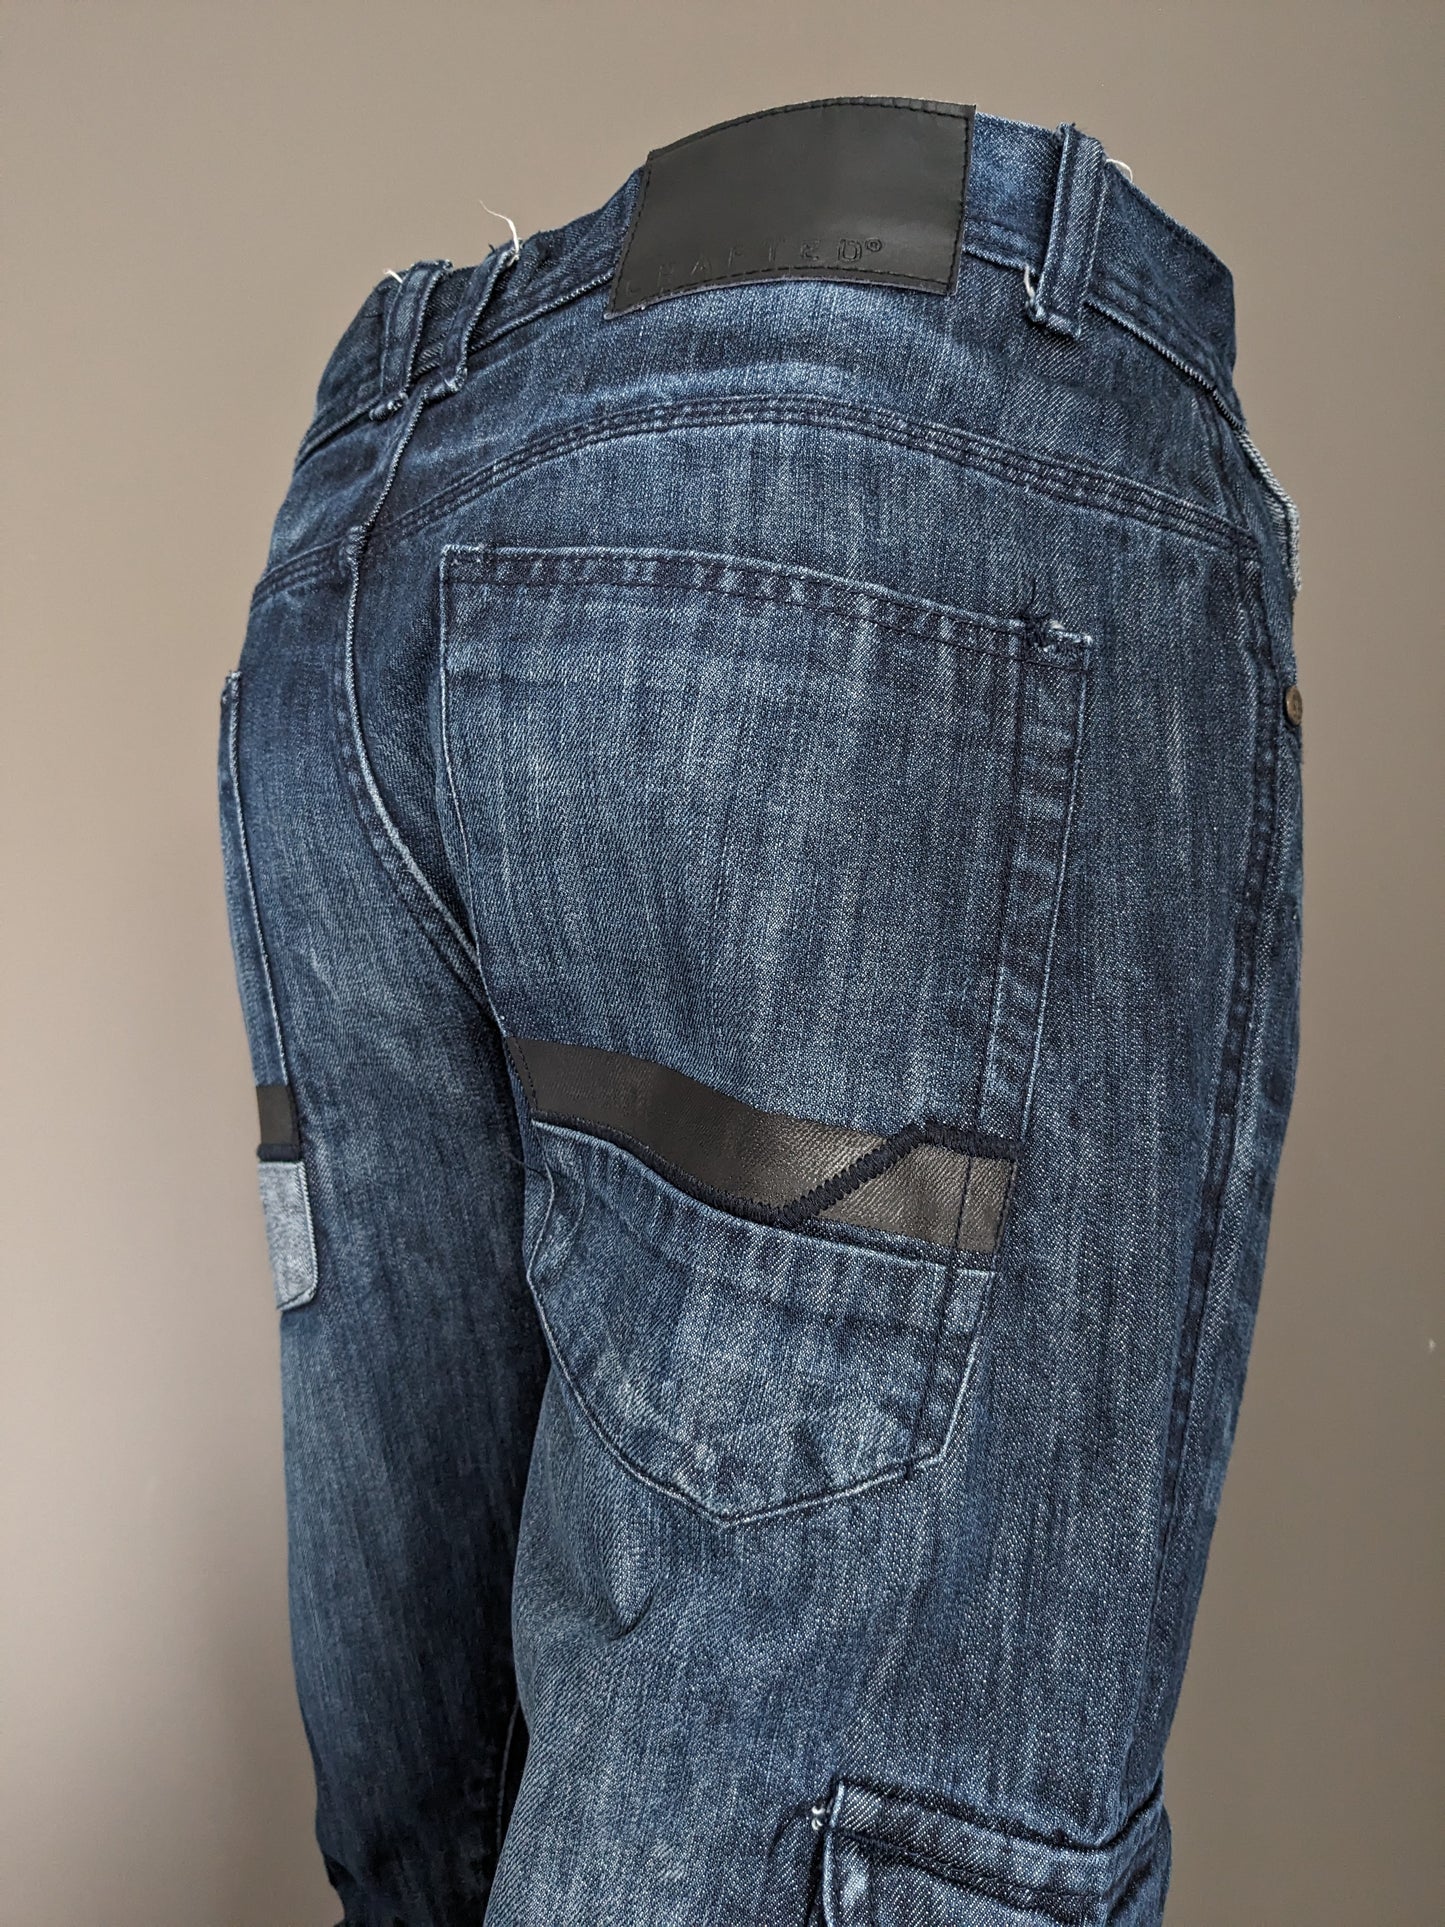 Jeans realizzati. Colorato blu scuro. Taglia W32 - L34.